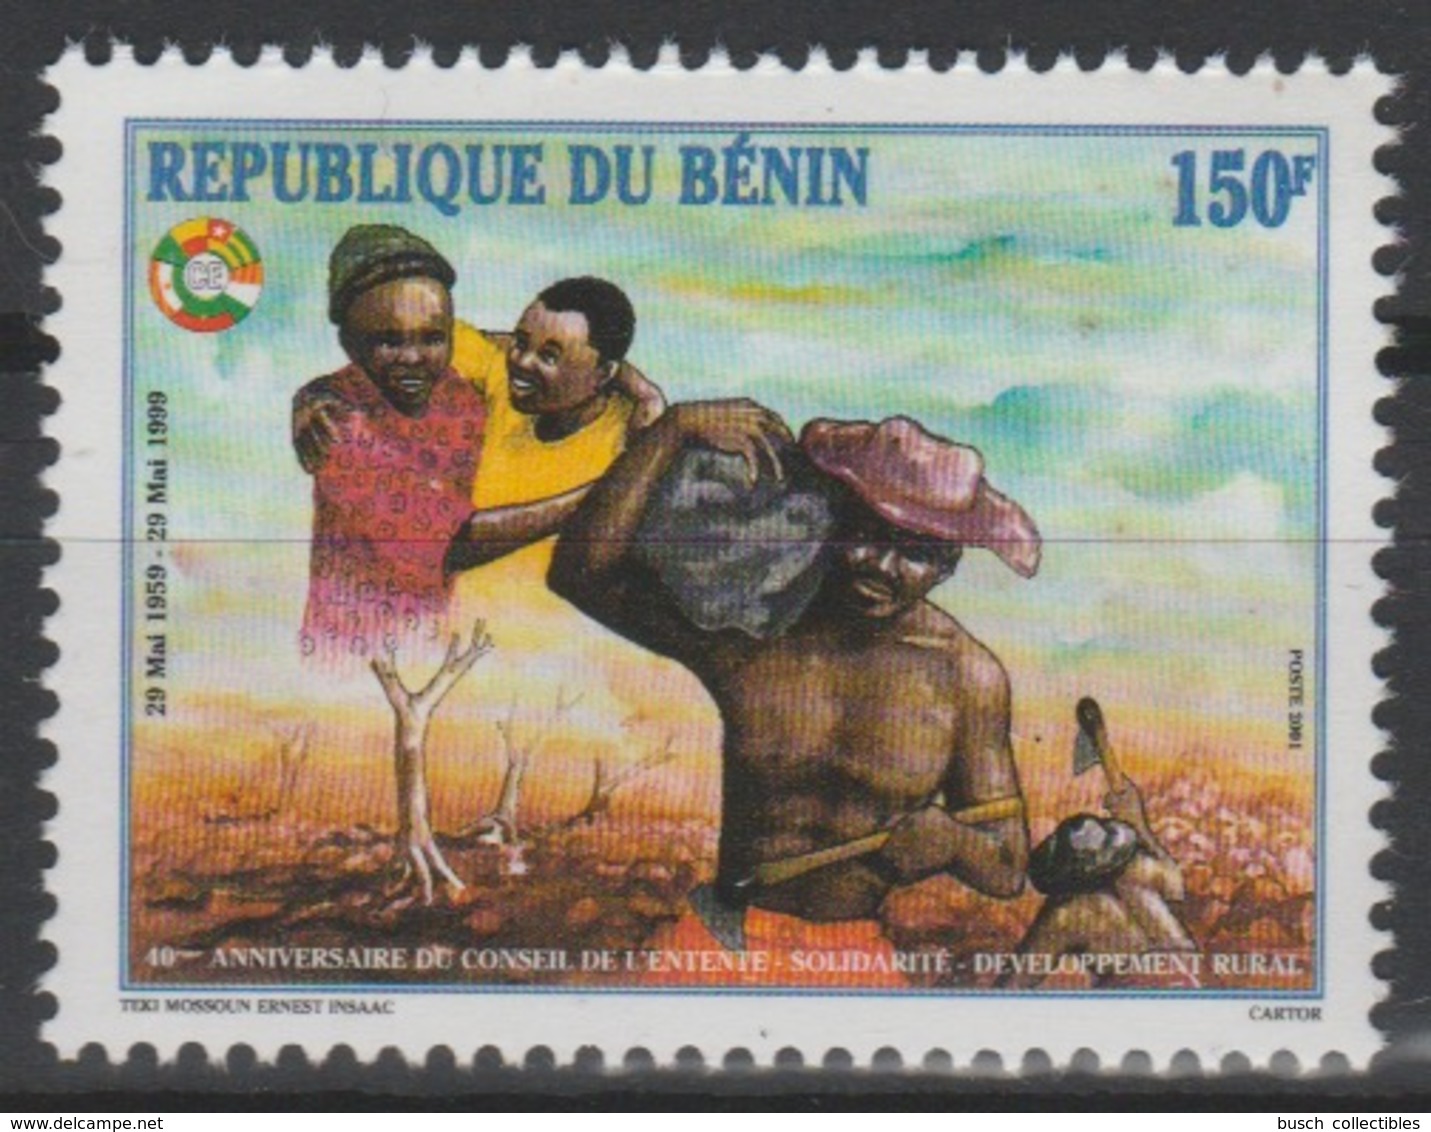 Bénin 2001 - Mi. 1230 III 150F 40 Ans Conseil De L'Entente Joint Issue émission Commune Conjointe RARE ! - Benin – Dahomey (1960-...)